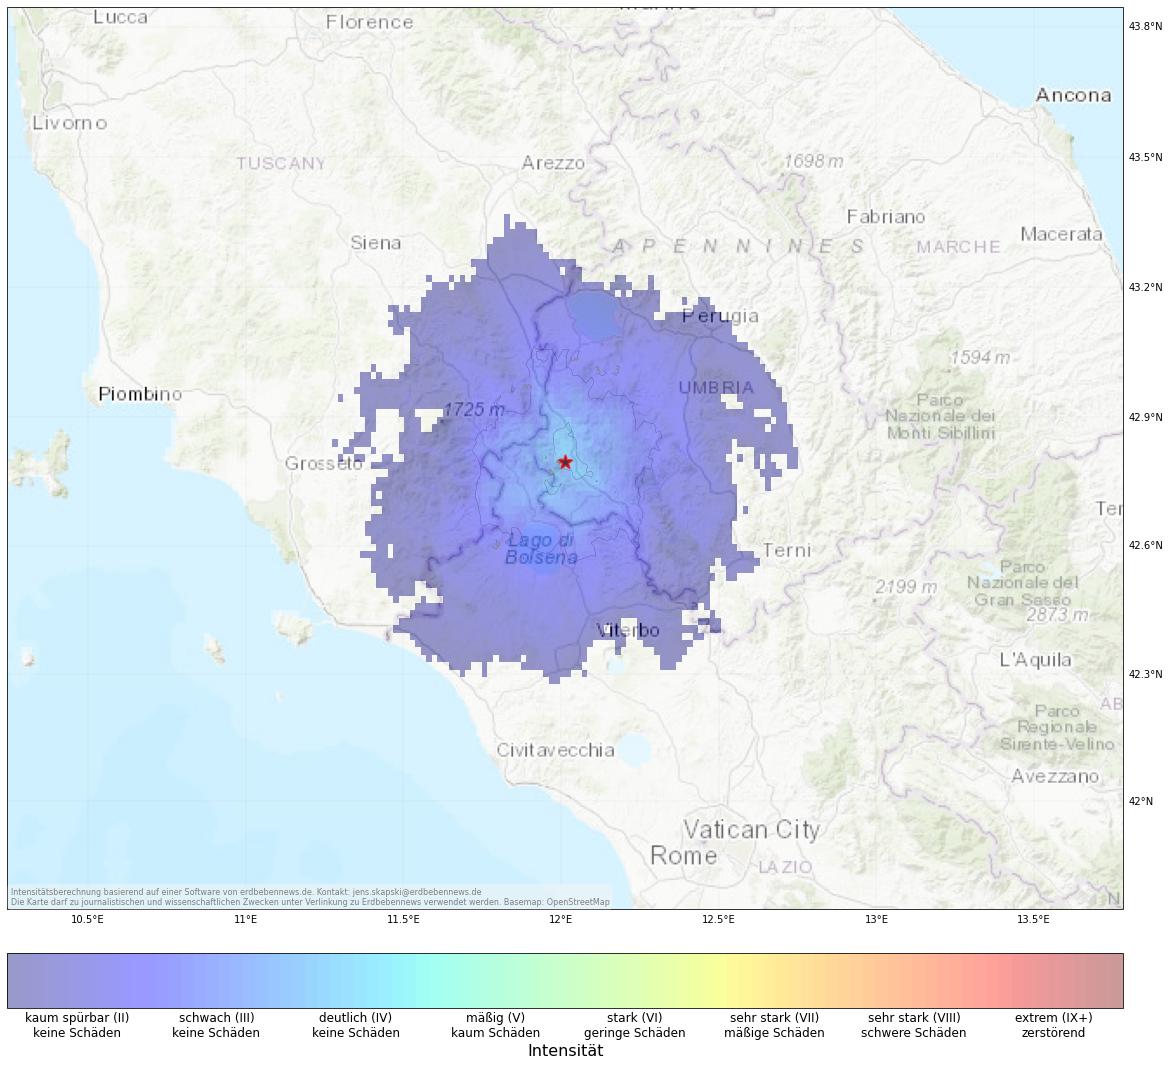 Berechnete Intensität (ShakeMap) des Erdbebens der Stärke 3.6 am 6. Dezember, 21:06 Uhr in Italien